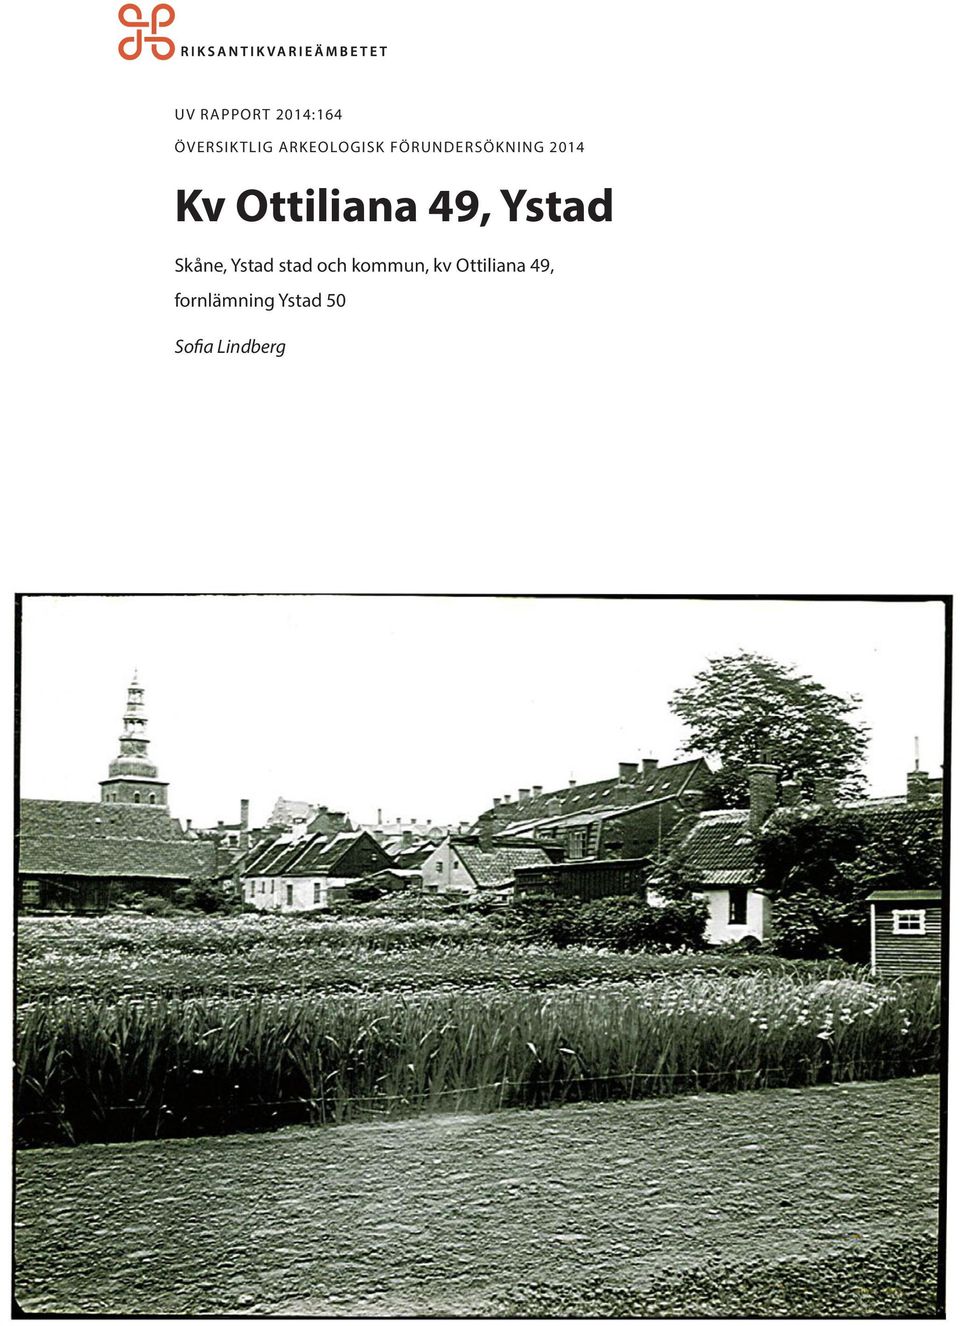 Ottiliana 49, Ystad Skåne, Ystad stad och